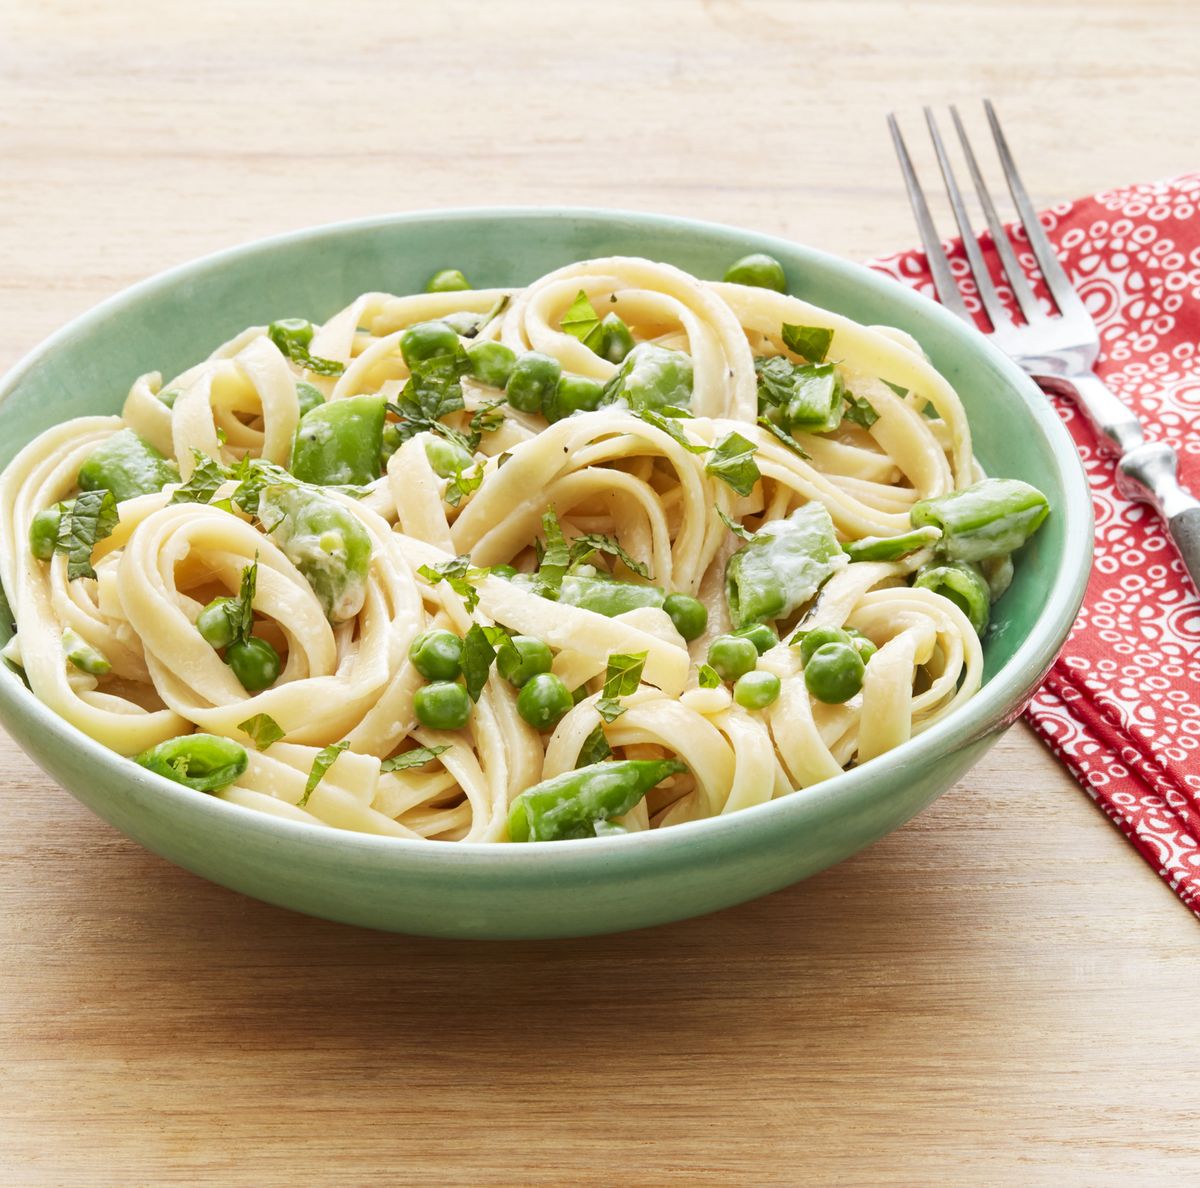 Best Pasta Primavera with Peas and Mint Recipe - How to Make Pasta Primavera  with Peas and Mint